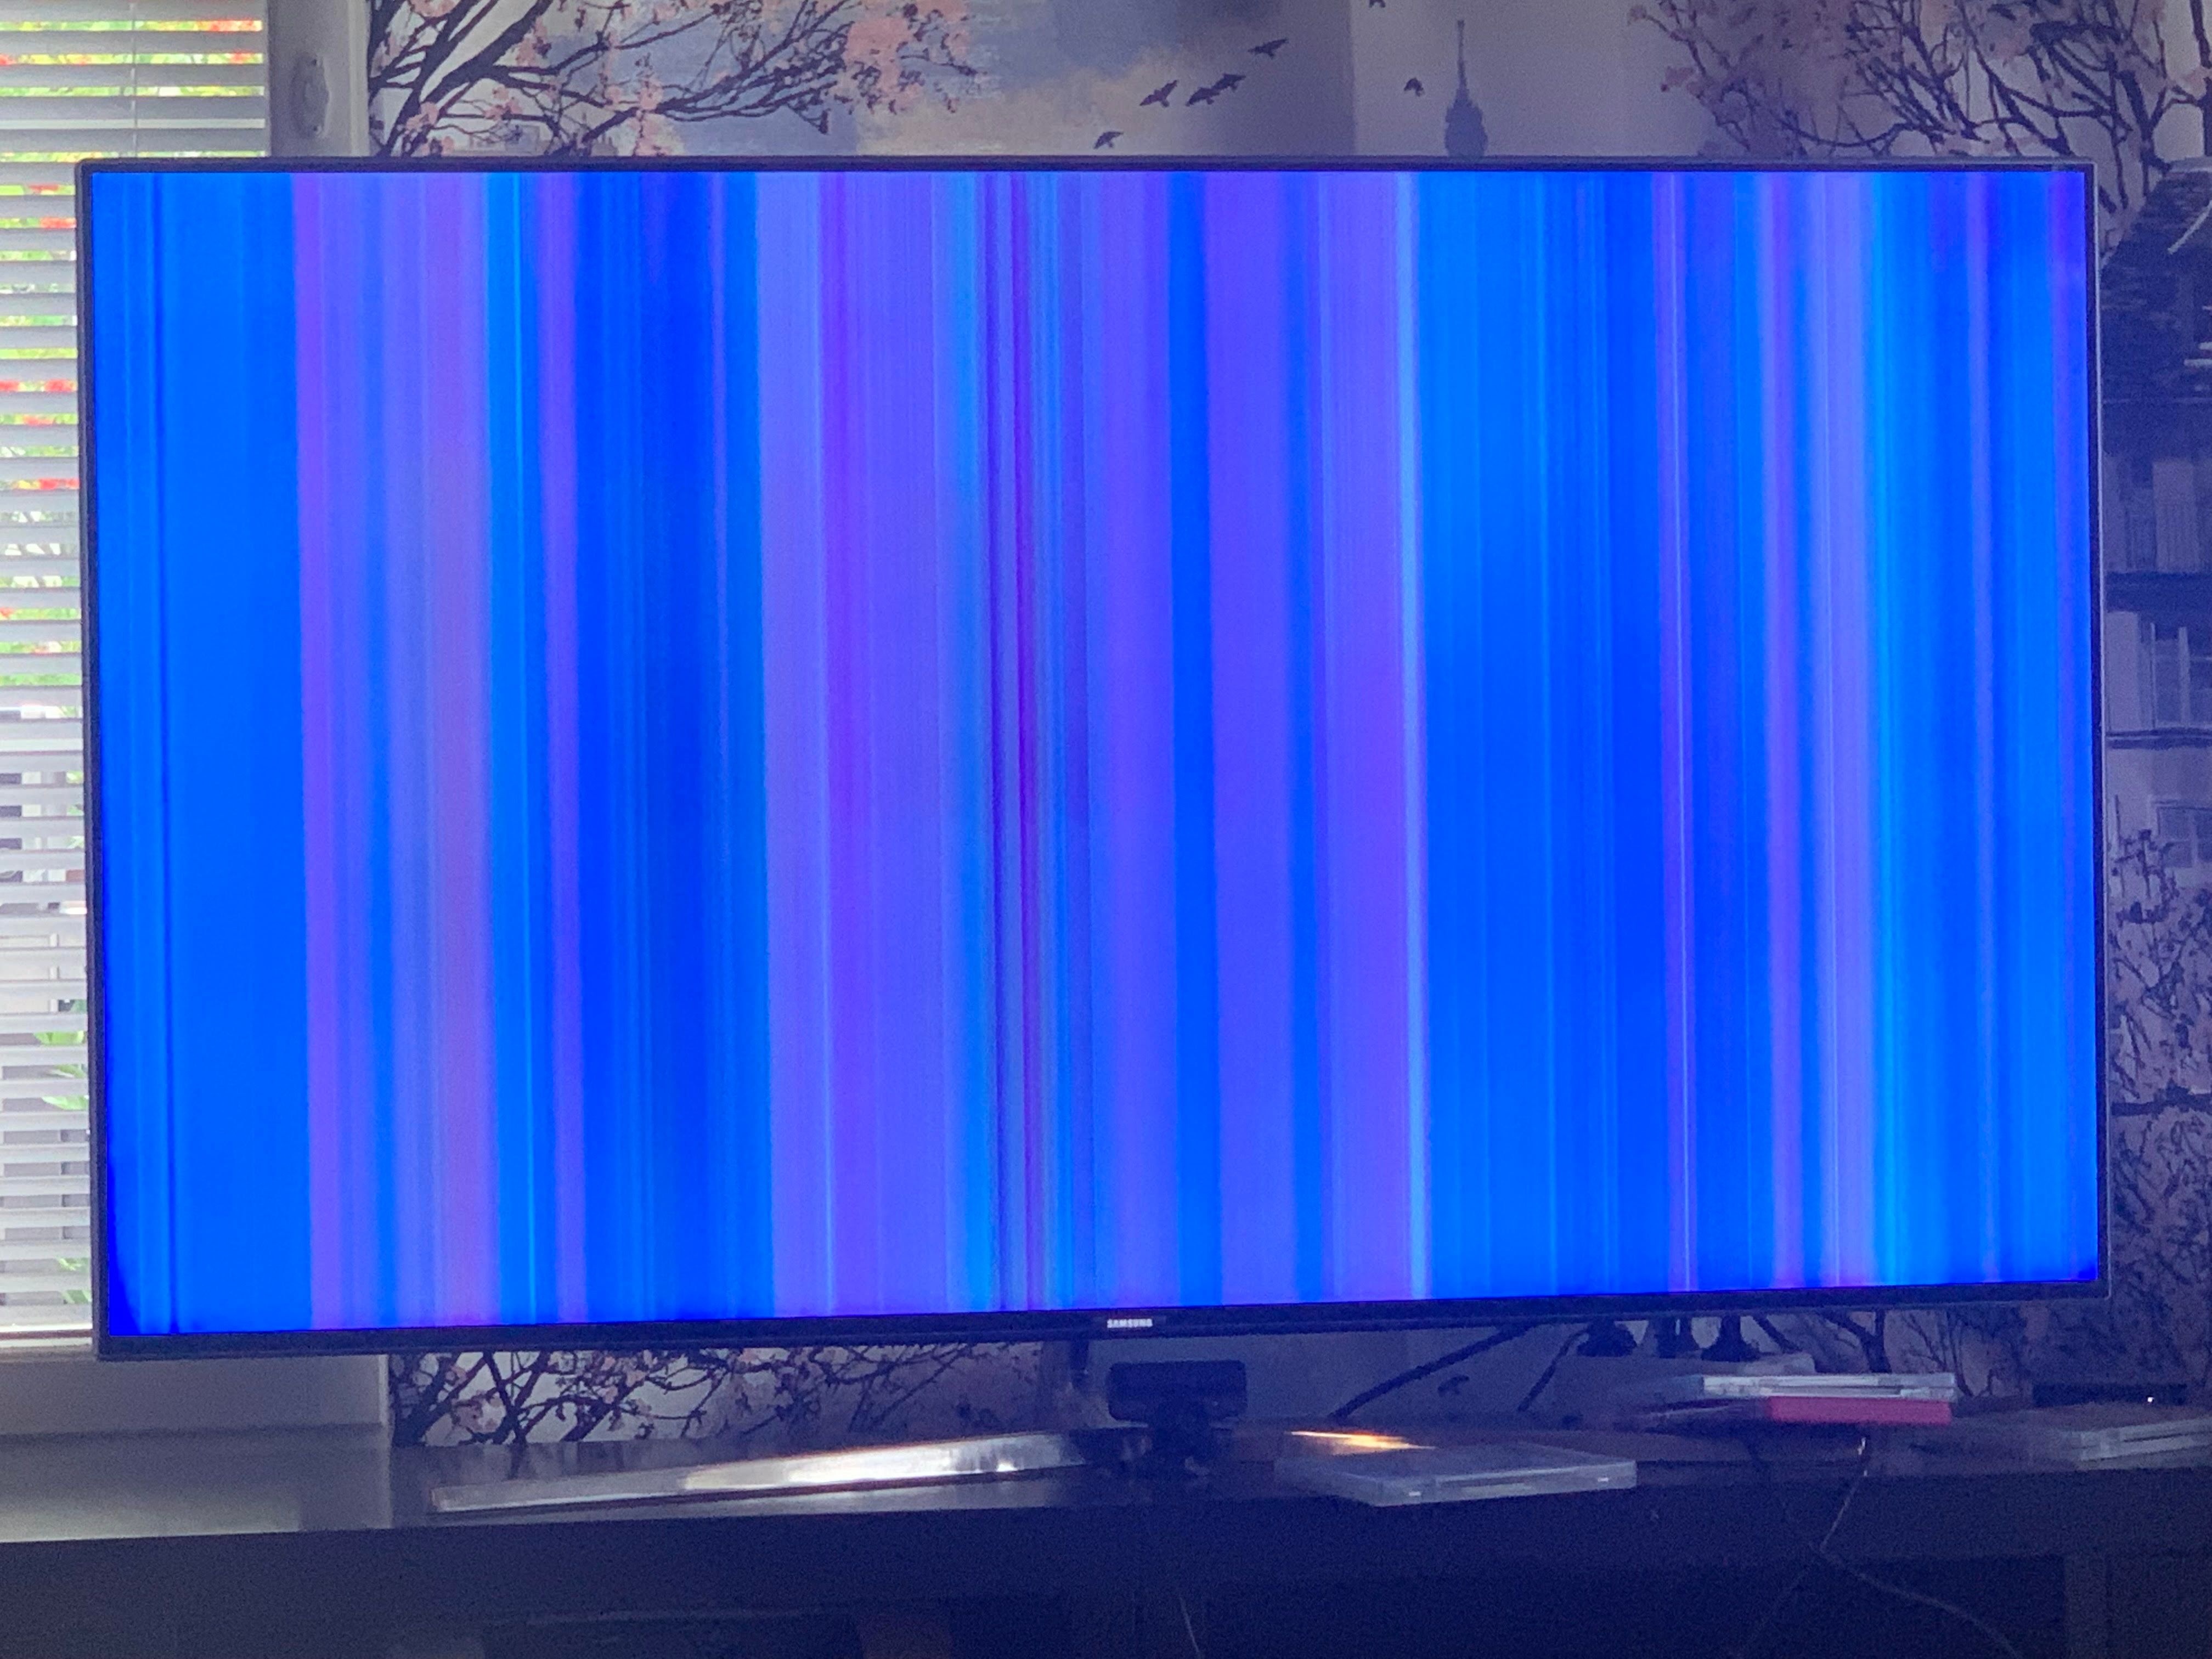 Телевизор samsung вертикальные полосы. Цветные полосы на экране телевизора. Android TV вертикальная полоса. Вертикальная полоса на телевизоре самсунг 2012. Ue40j5200au зеленые вертикальные полосы.